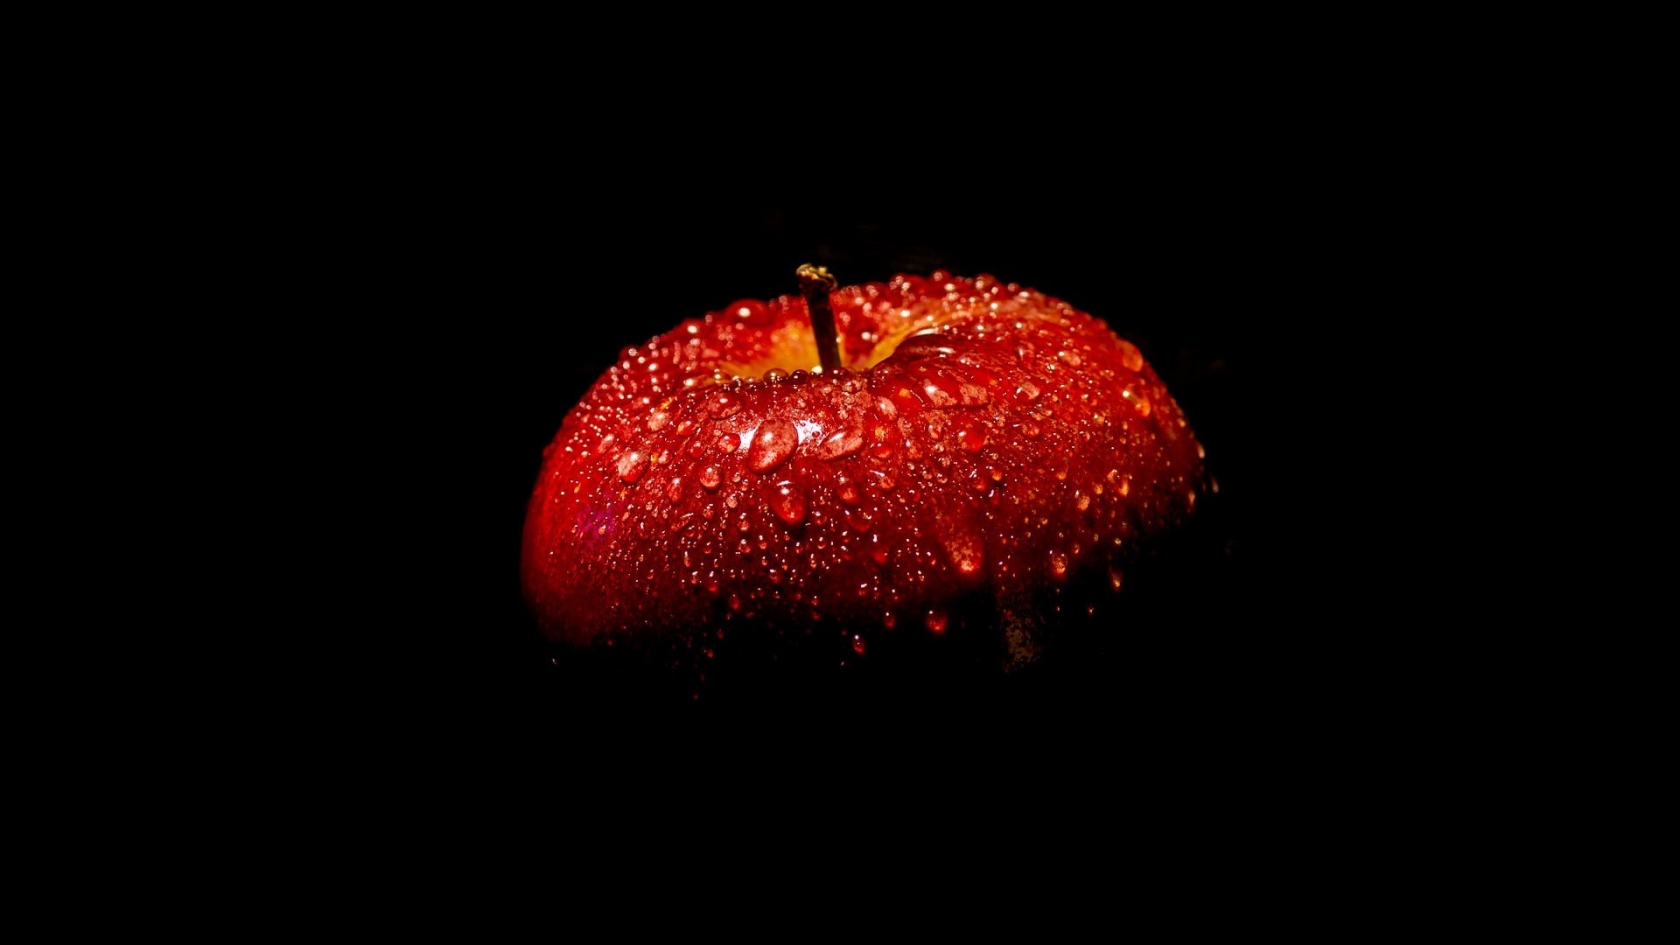 Fresh Red Apple for 1680 x 945 HDTV resolution